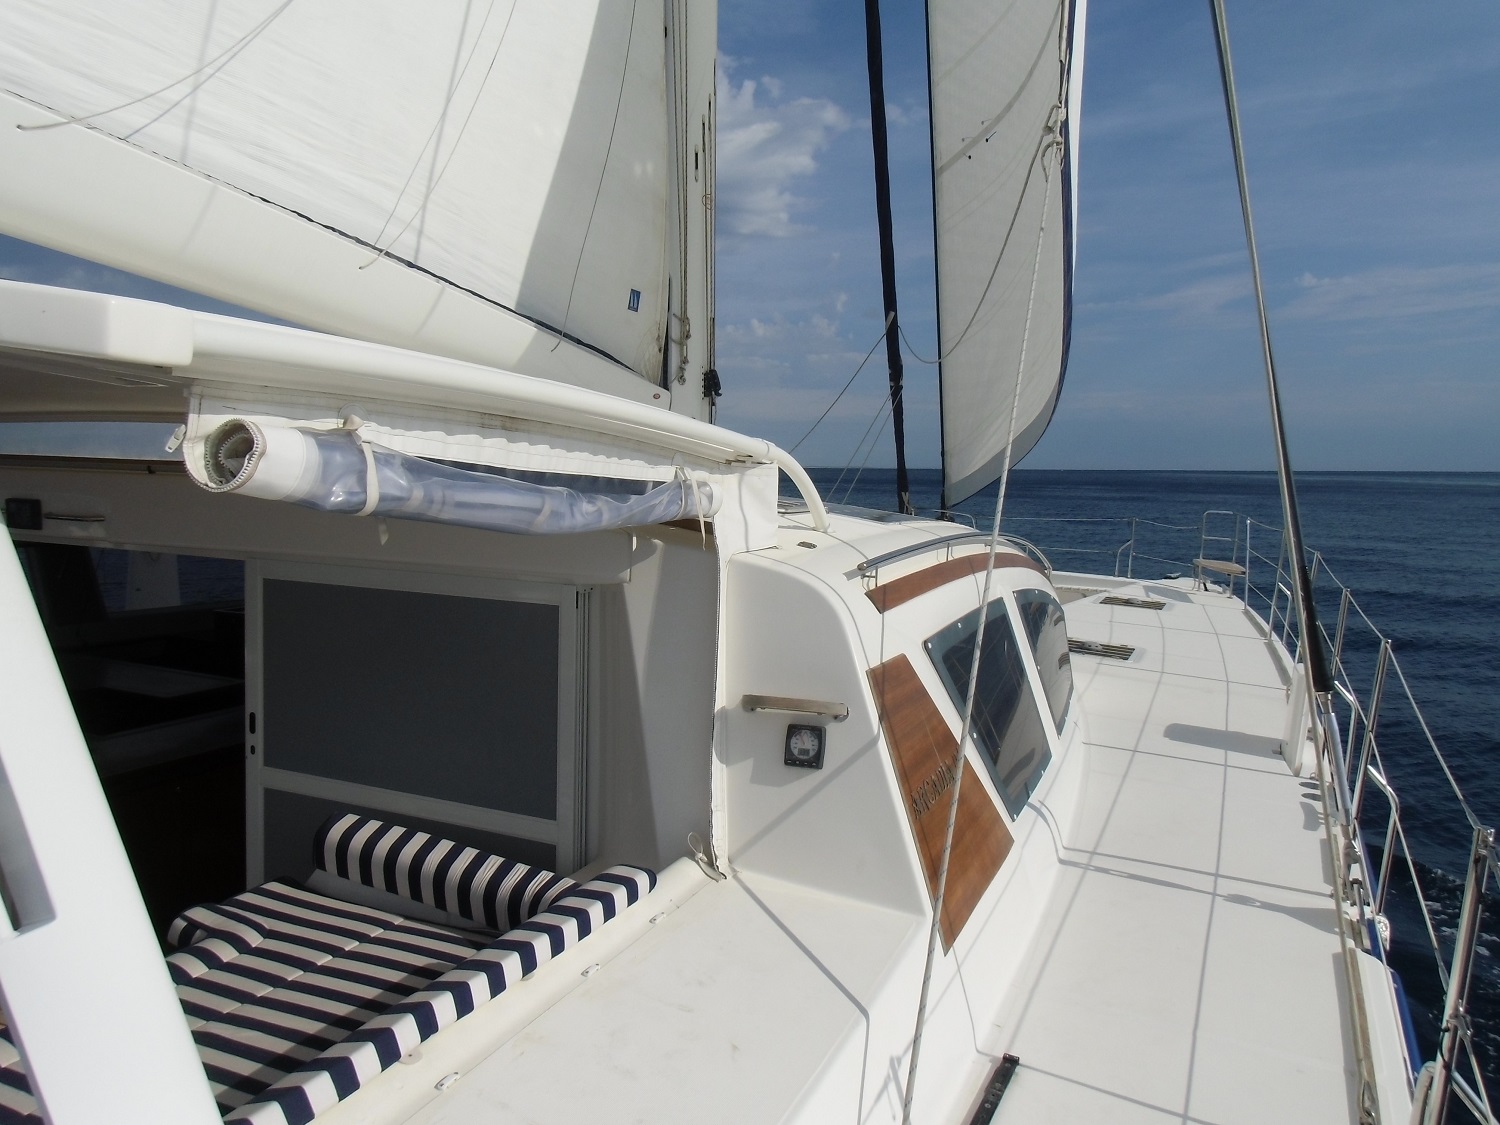 Catana 65 - sails up